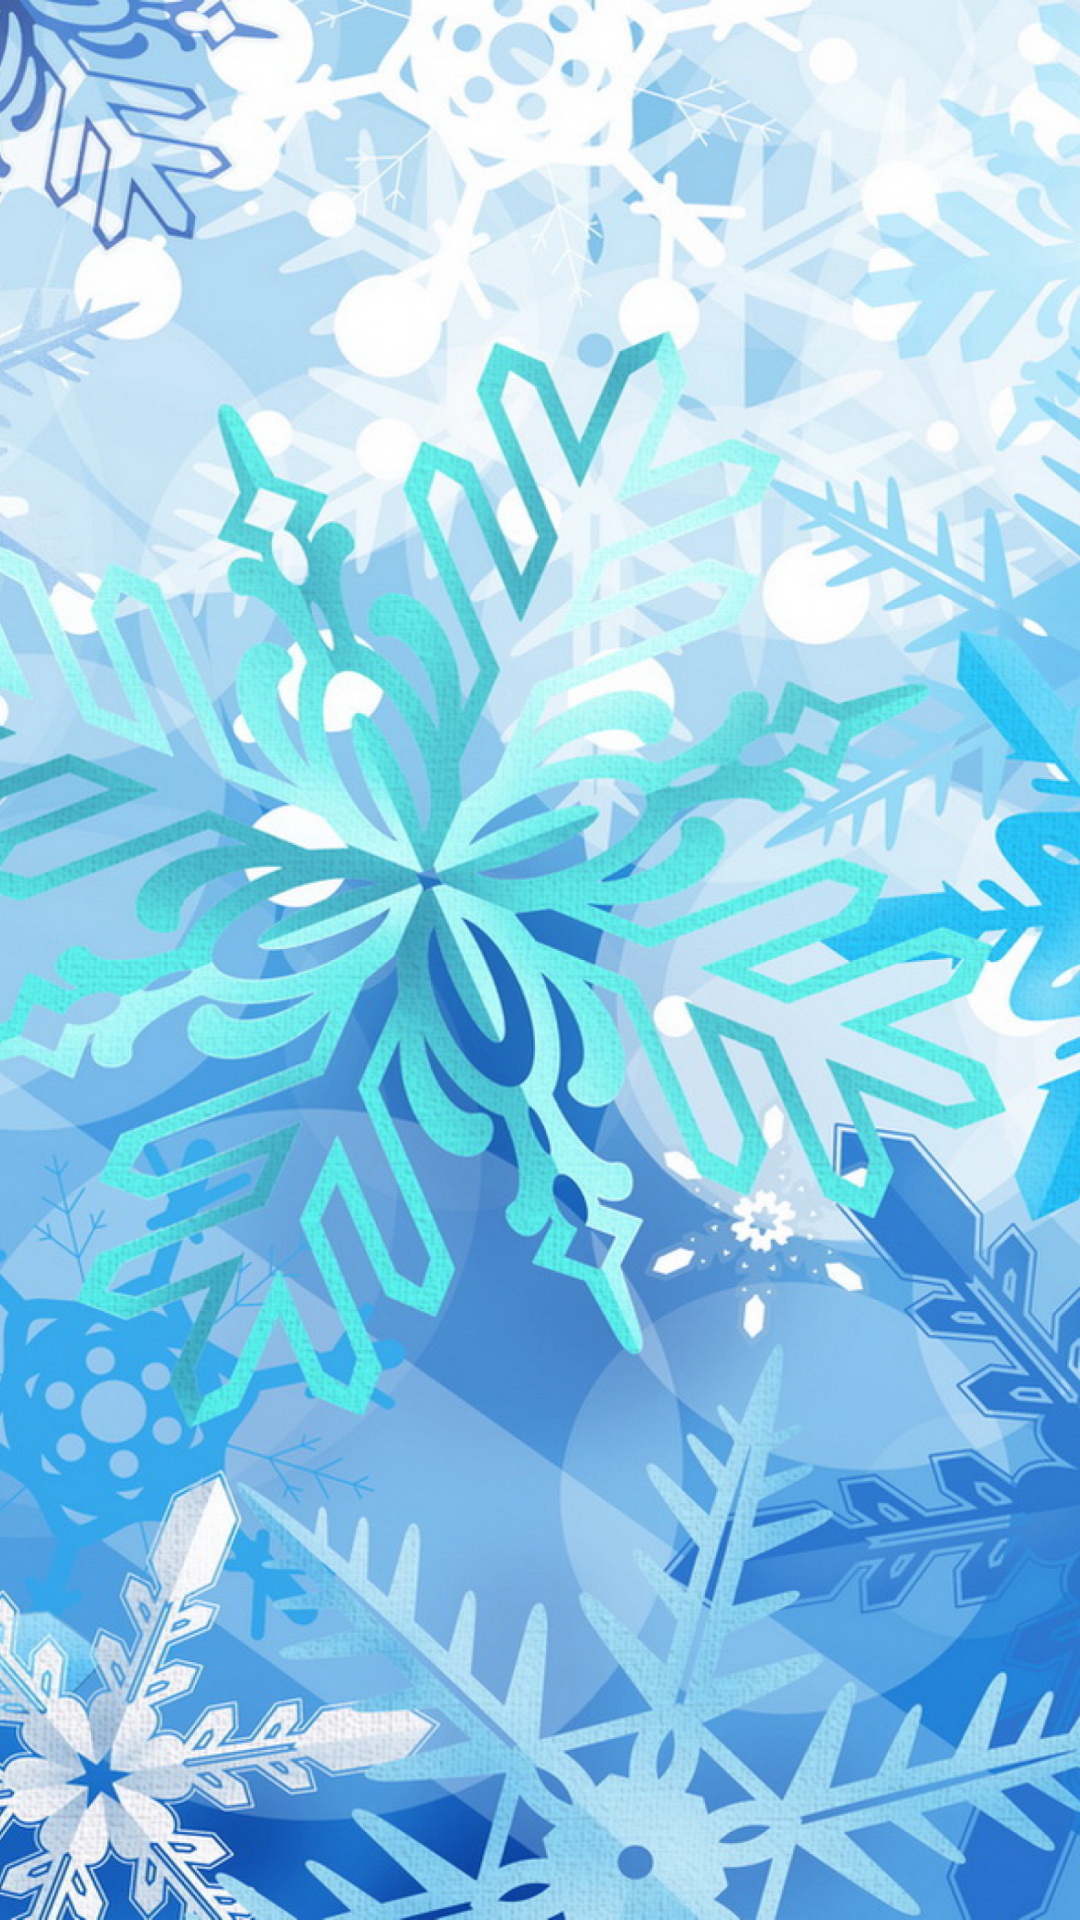 Das Christmas Snowflakes Wallpaper 1080x1920